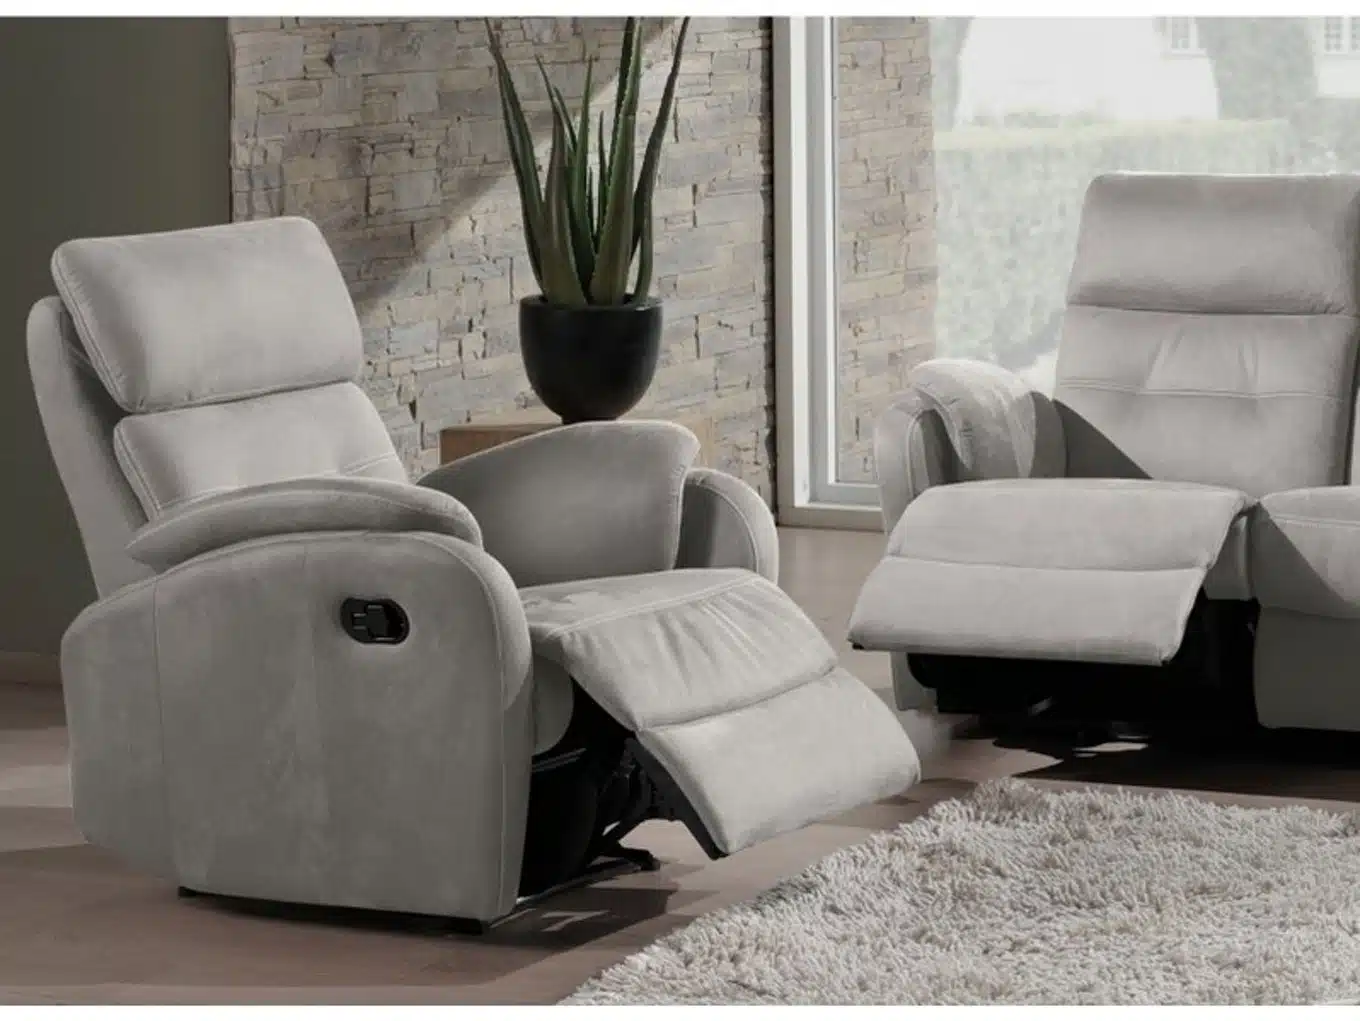 Le fauteuil relax, un meuble qui invite à la détente